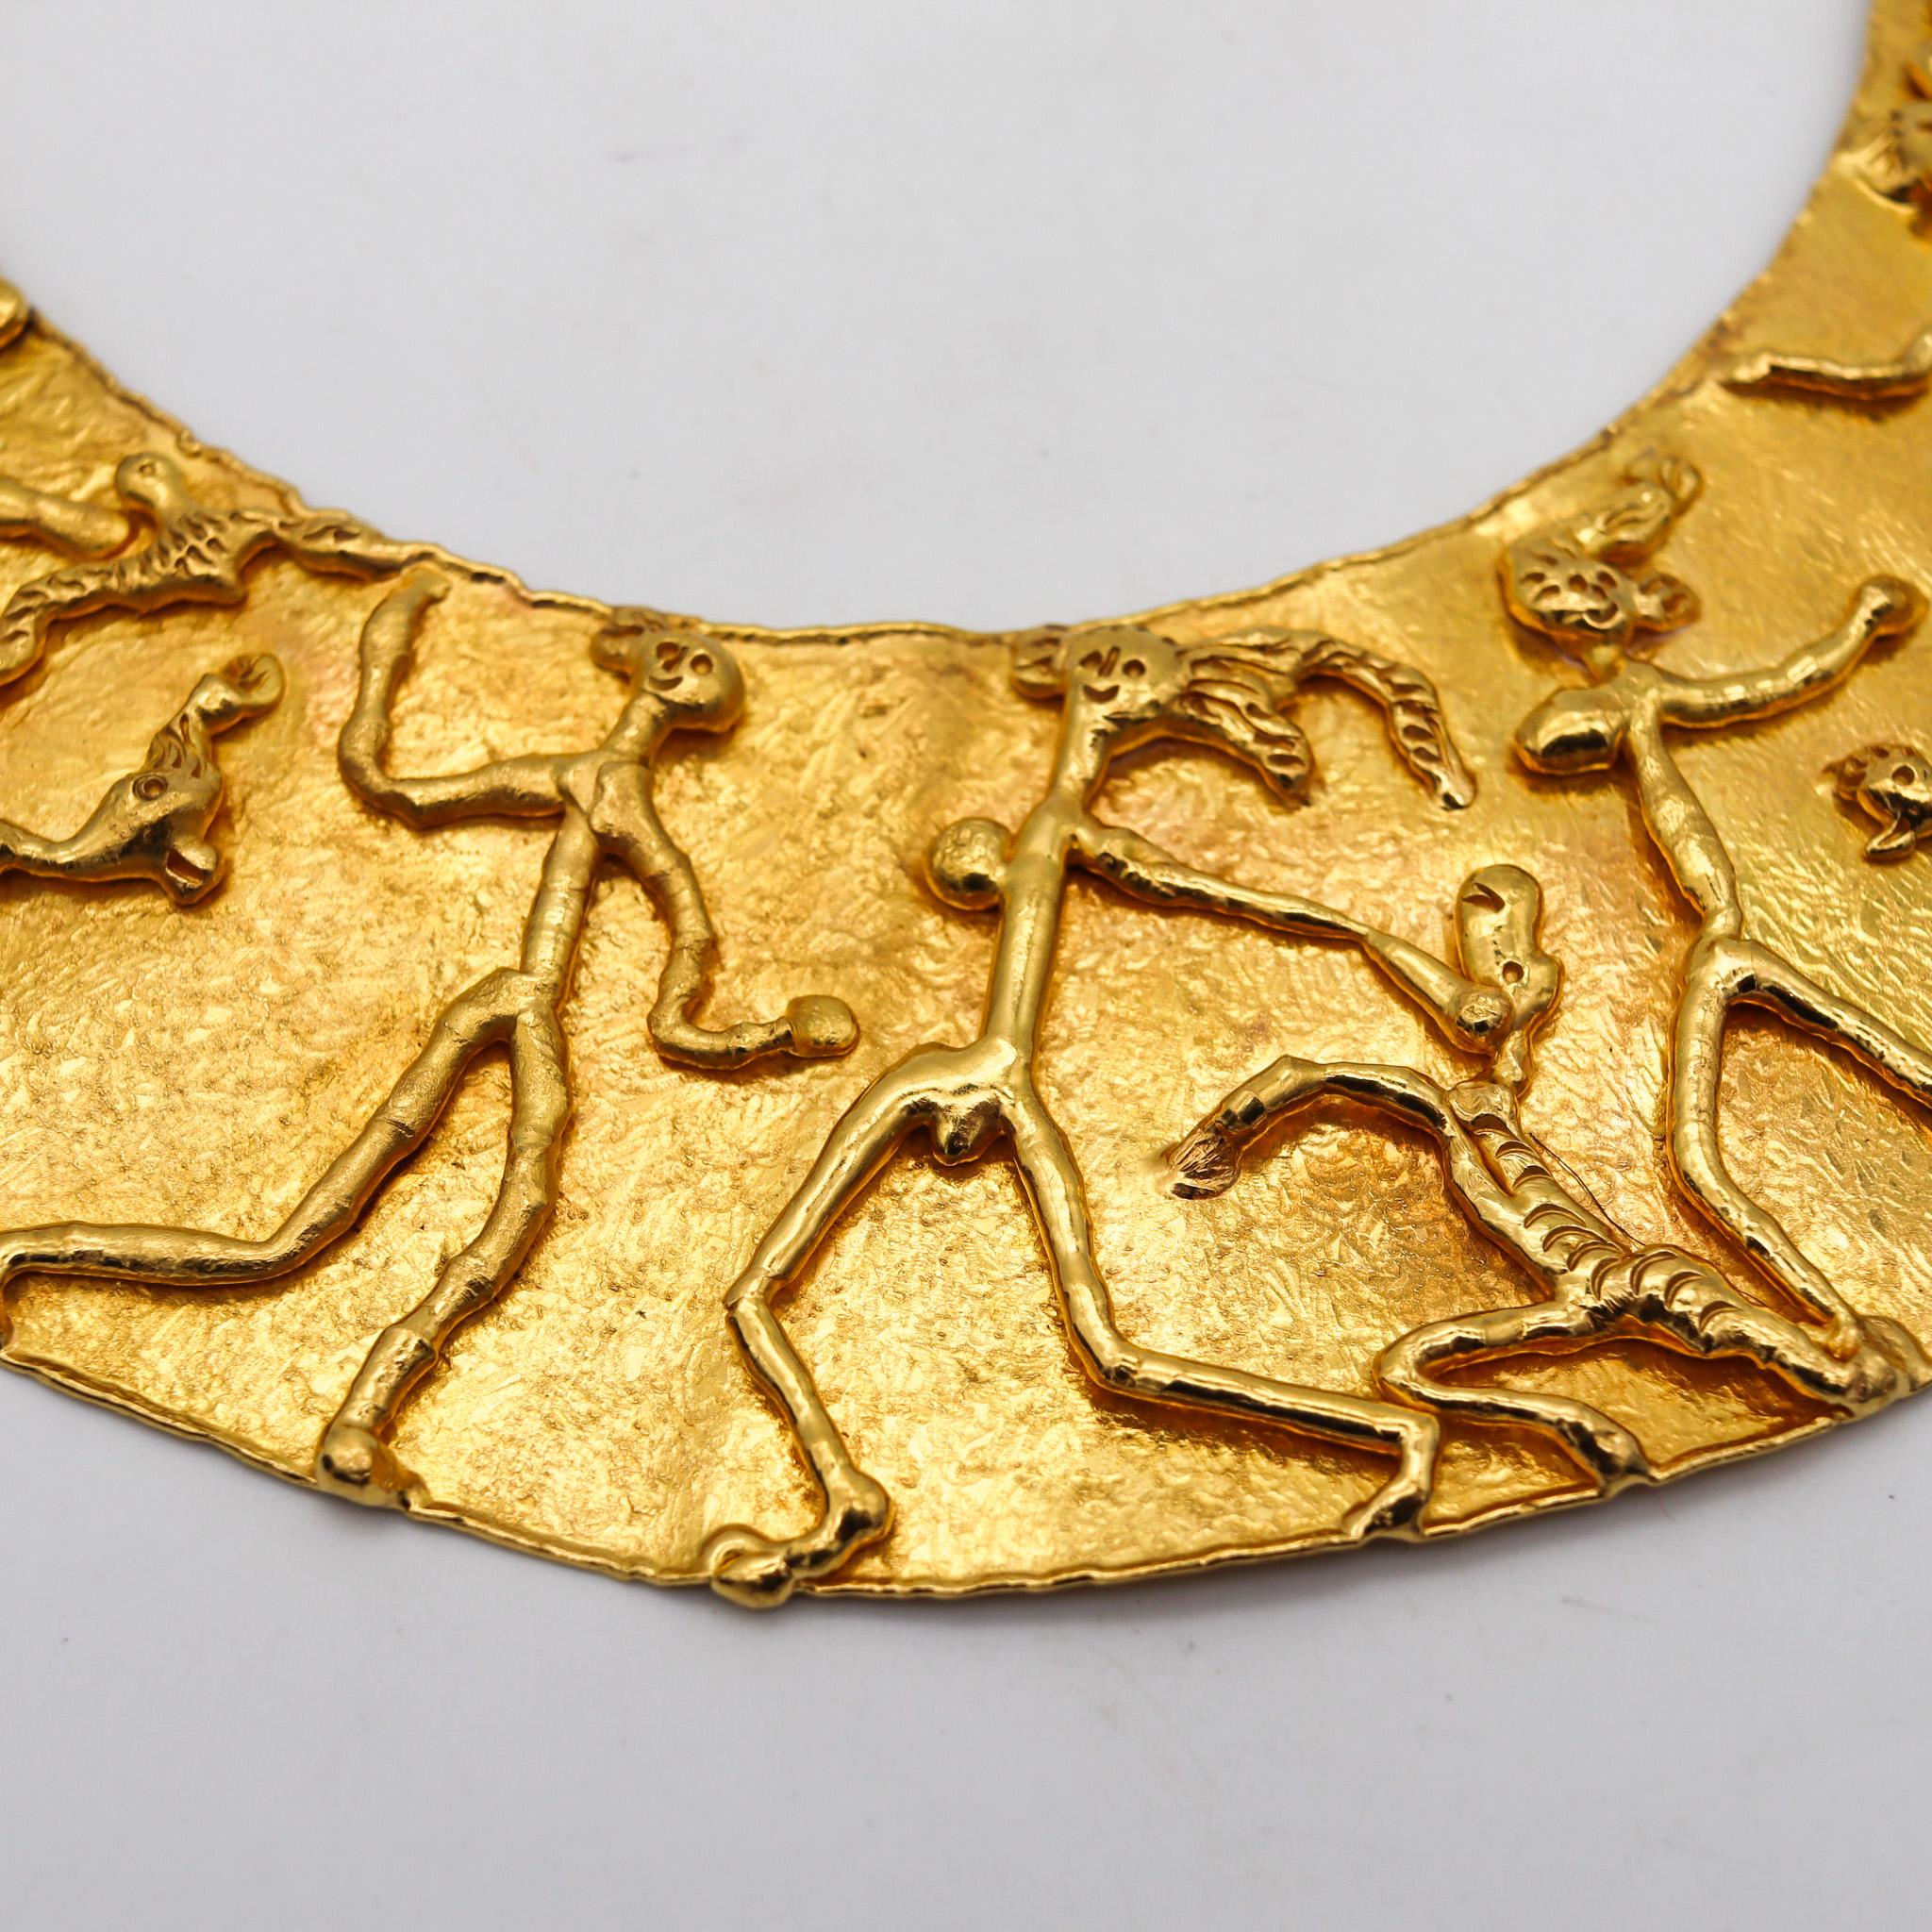 Eine von Jean Mahie entworfene Halskette.

Ein sehr beeindruckendes Stück, das der Künstler und Goldschmied Jean Mahie in den 1970er Jahren in Paris geschaffen hat. Diese wunderbare skulpturale Halskette ist Teil der Kollektion 